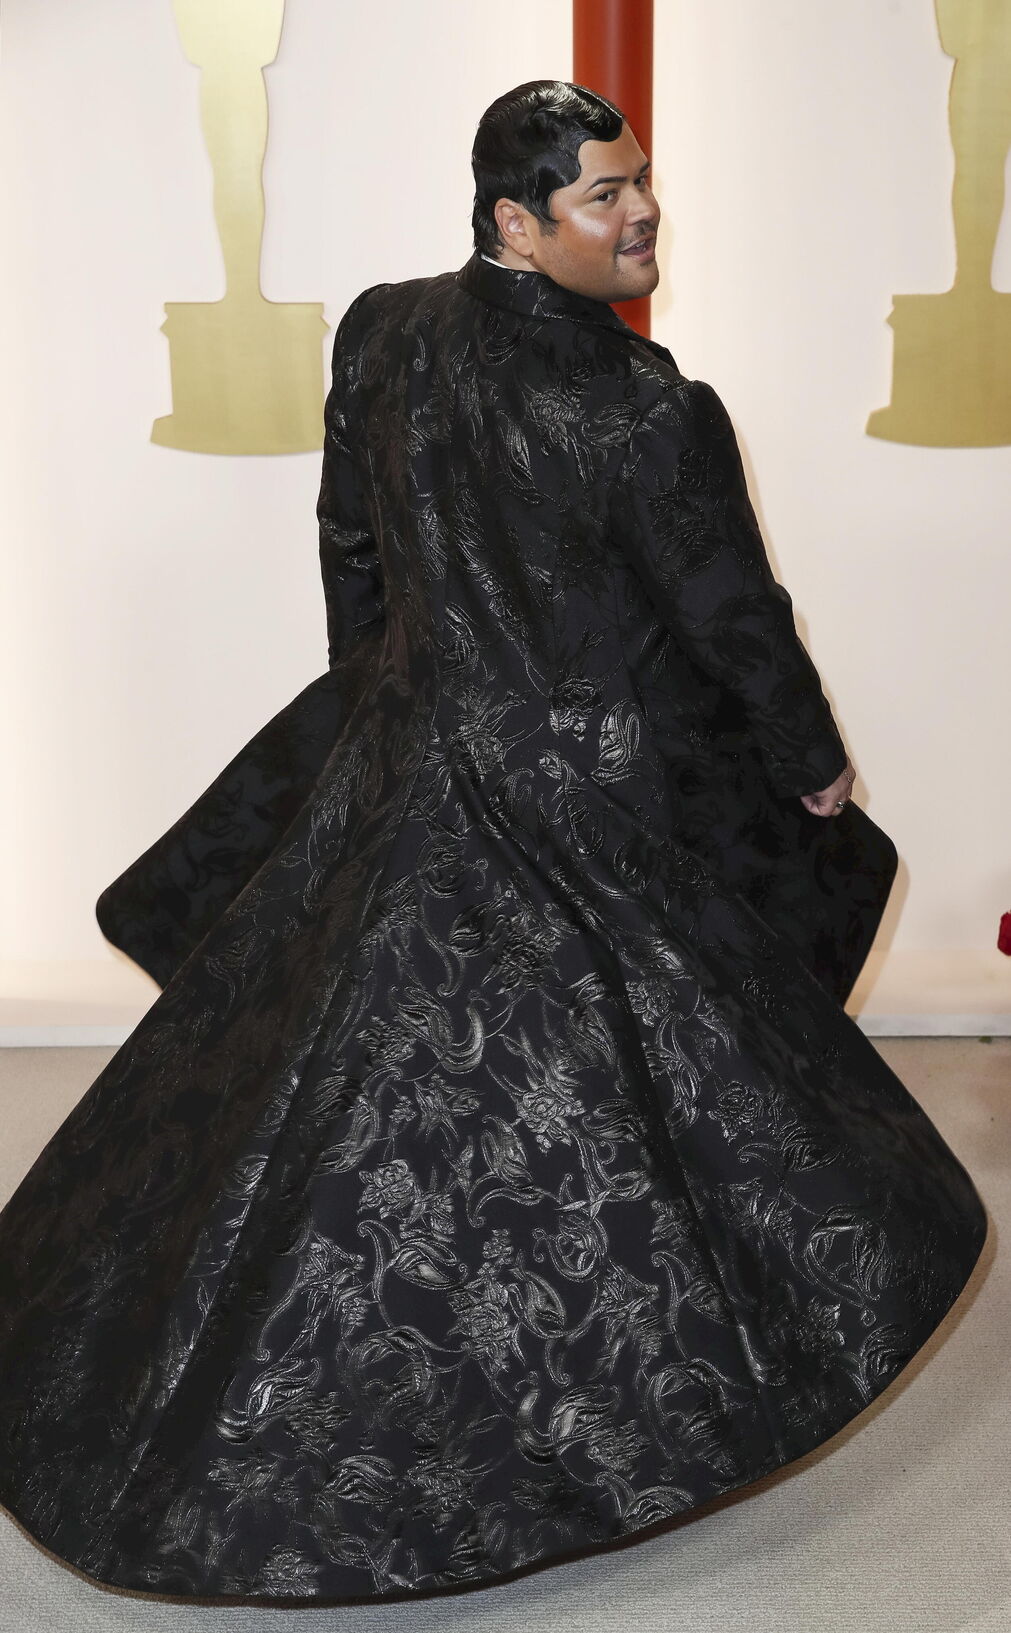 Harvey Guillem muestra la capa de su vestido negro de damascos en forma de rosas